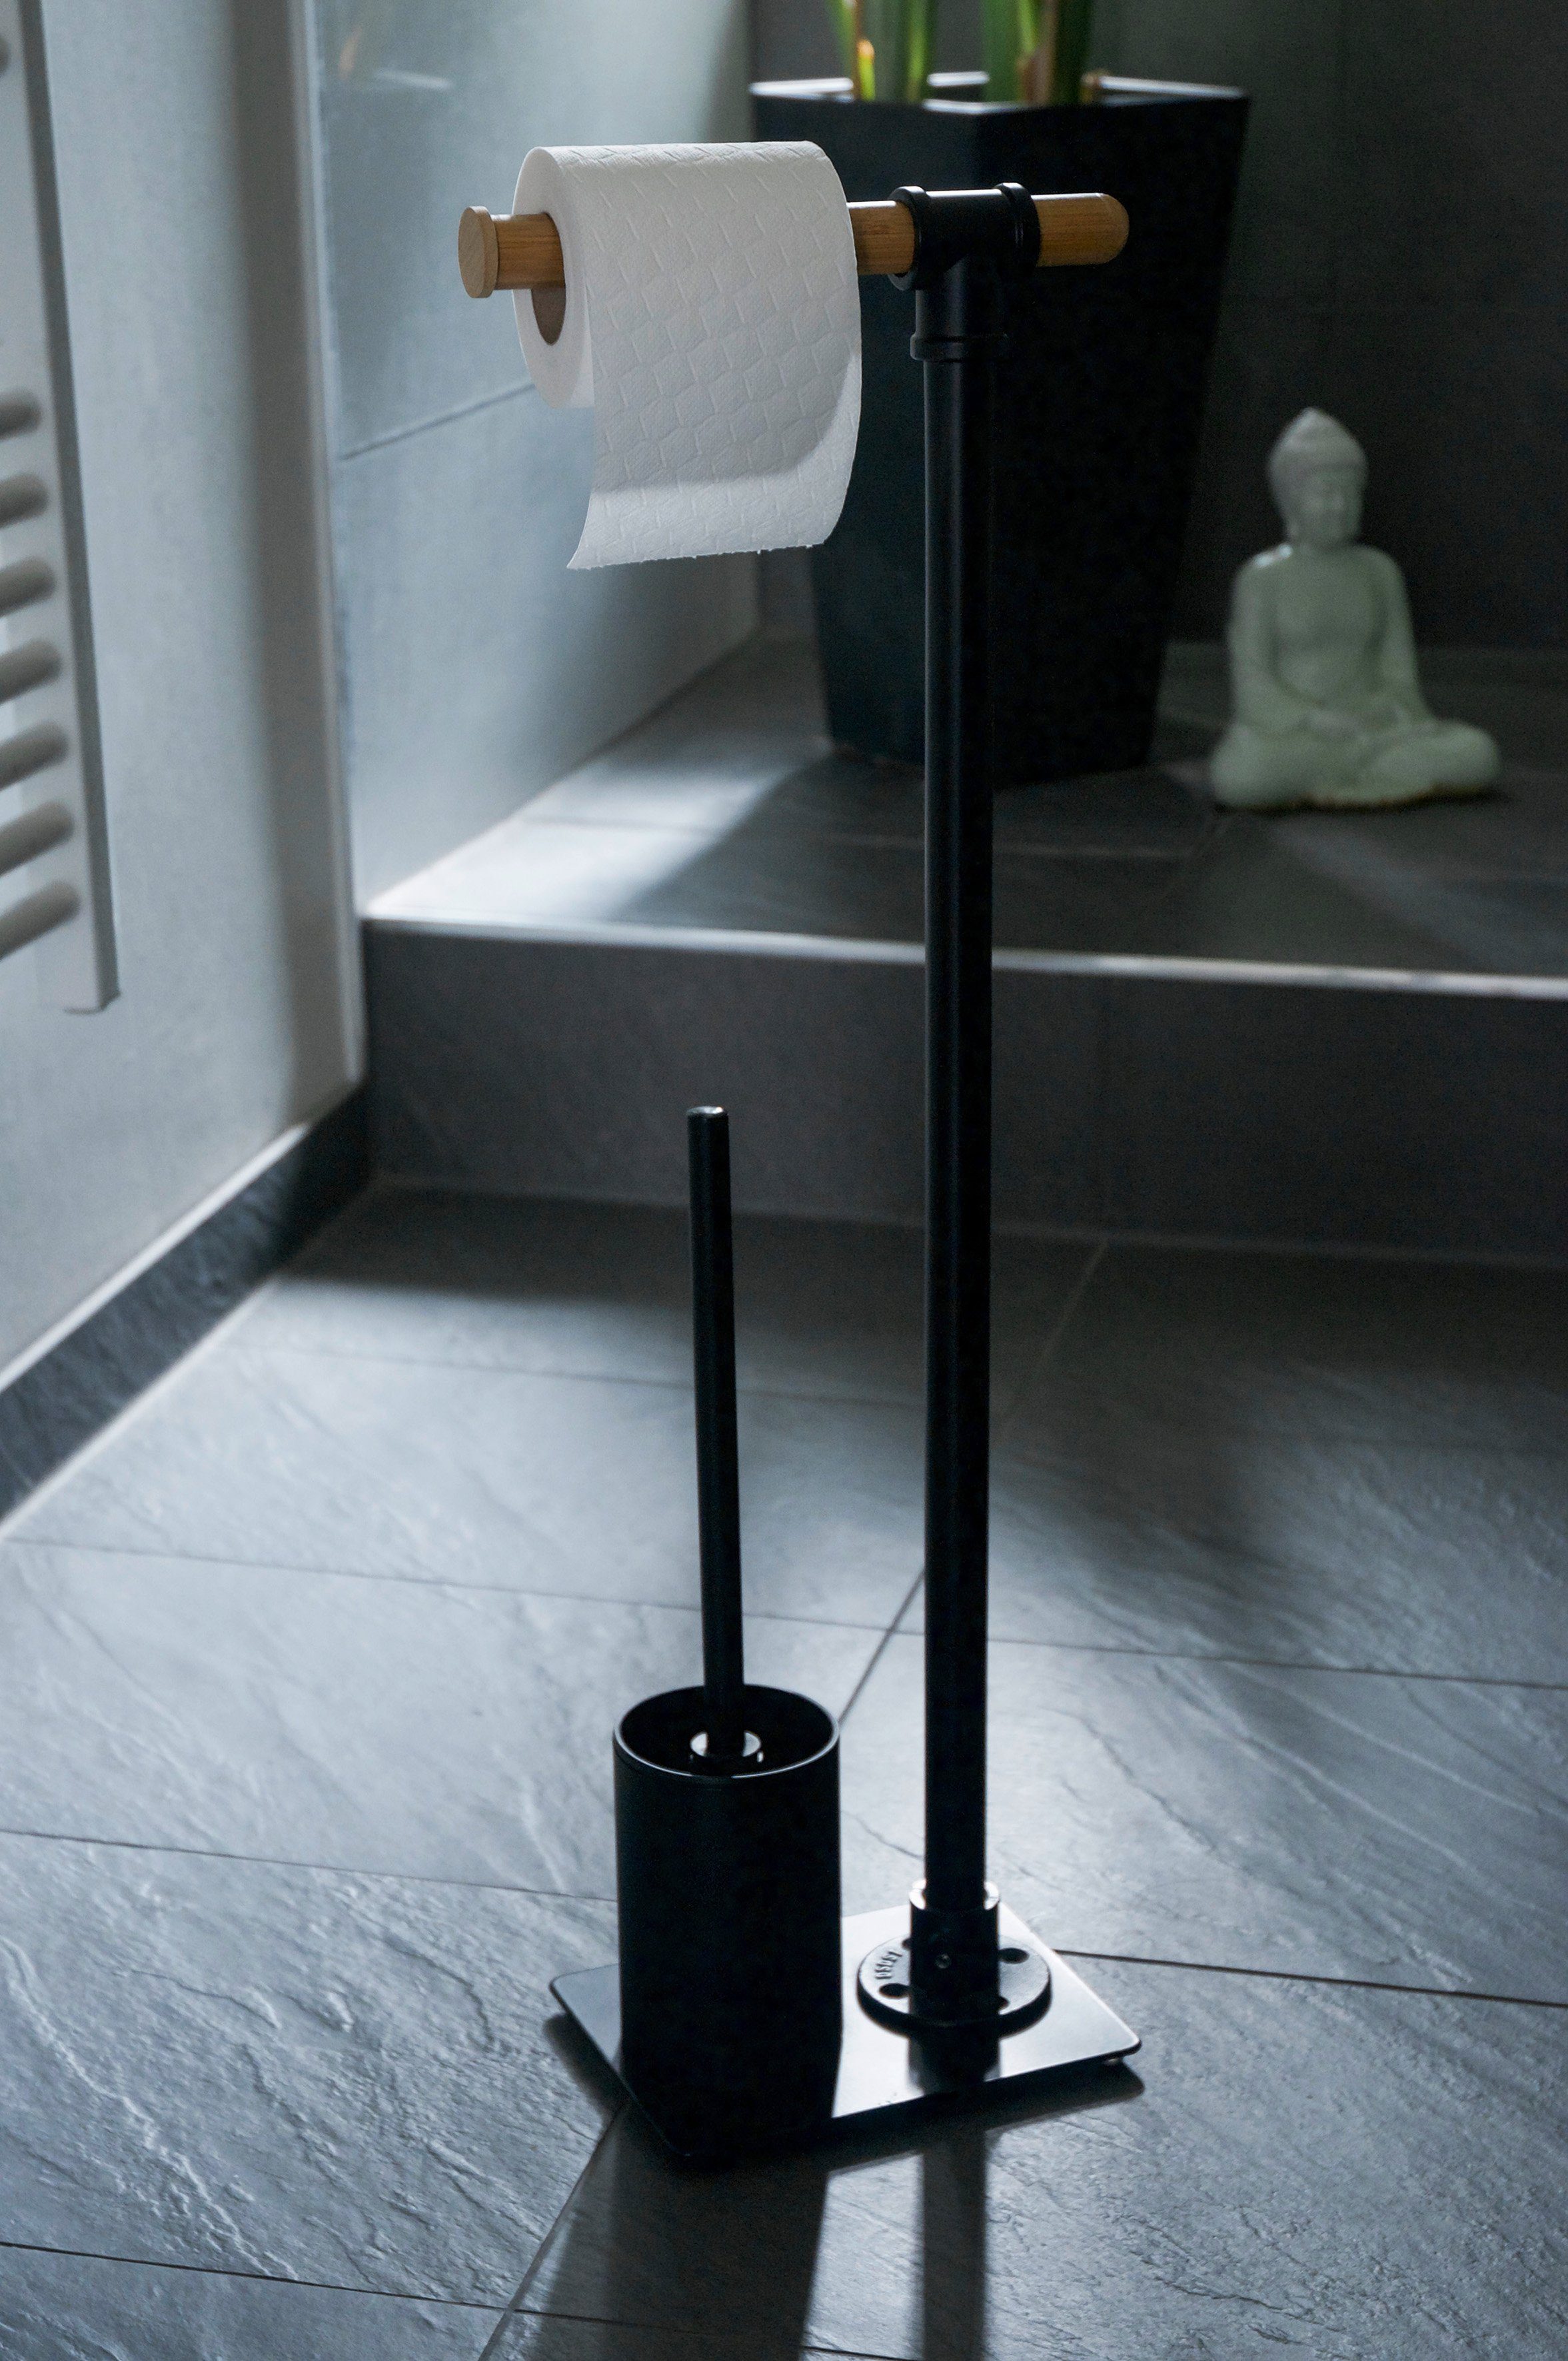 WENKO Stahl Bambus WC-Garnitur aus Schwarz in lackierter und mattem inkl. WC-Bürste, Rollenhalterung Finish, Rollenhalter Forli,